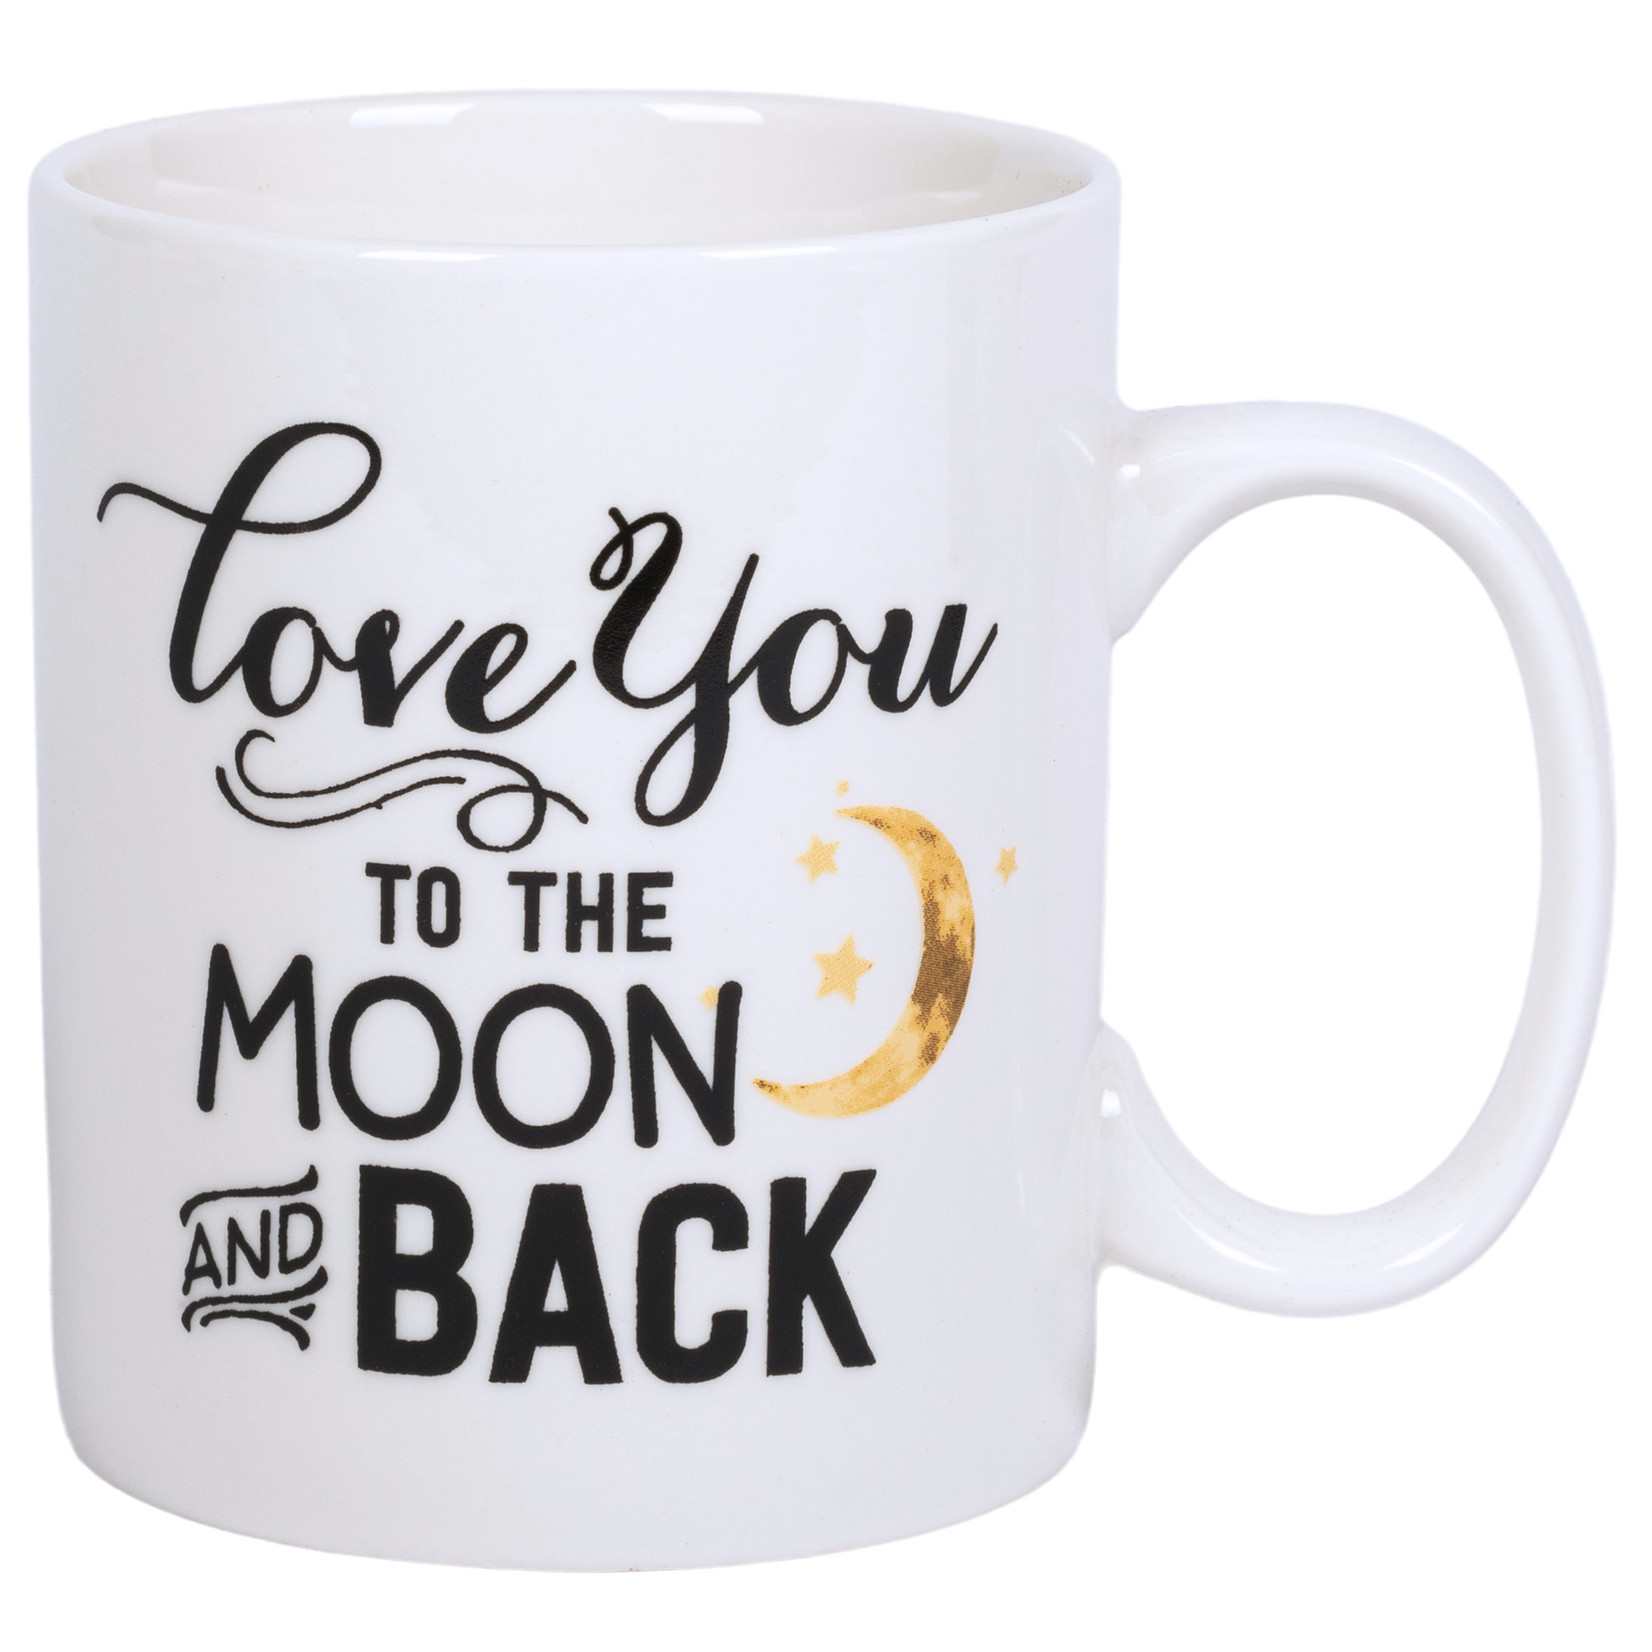 Love you to moon & back mug